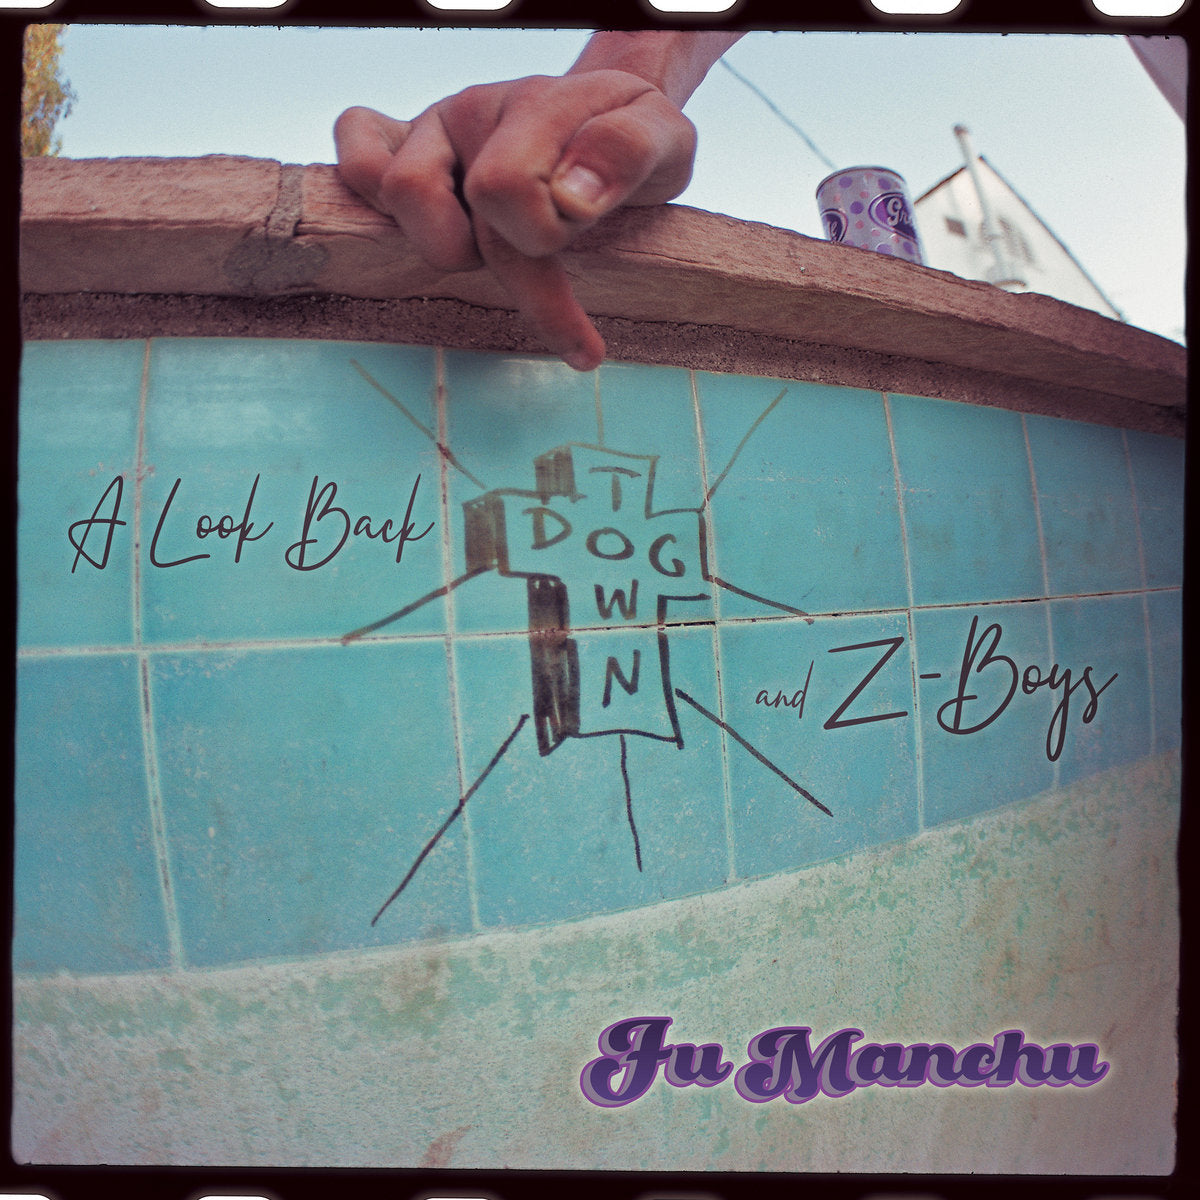 Fu Manchu - A Look Back: Dogtown & Z-Boys (Vinyl 2LP)